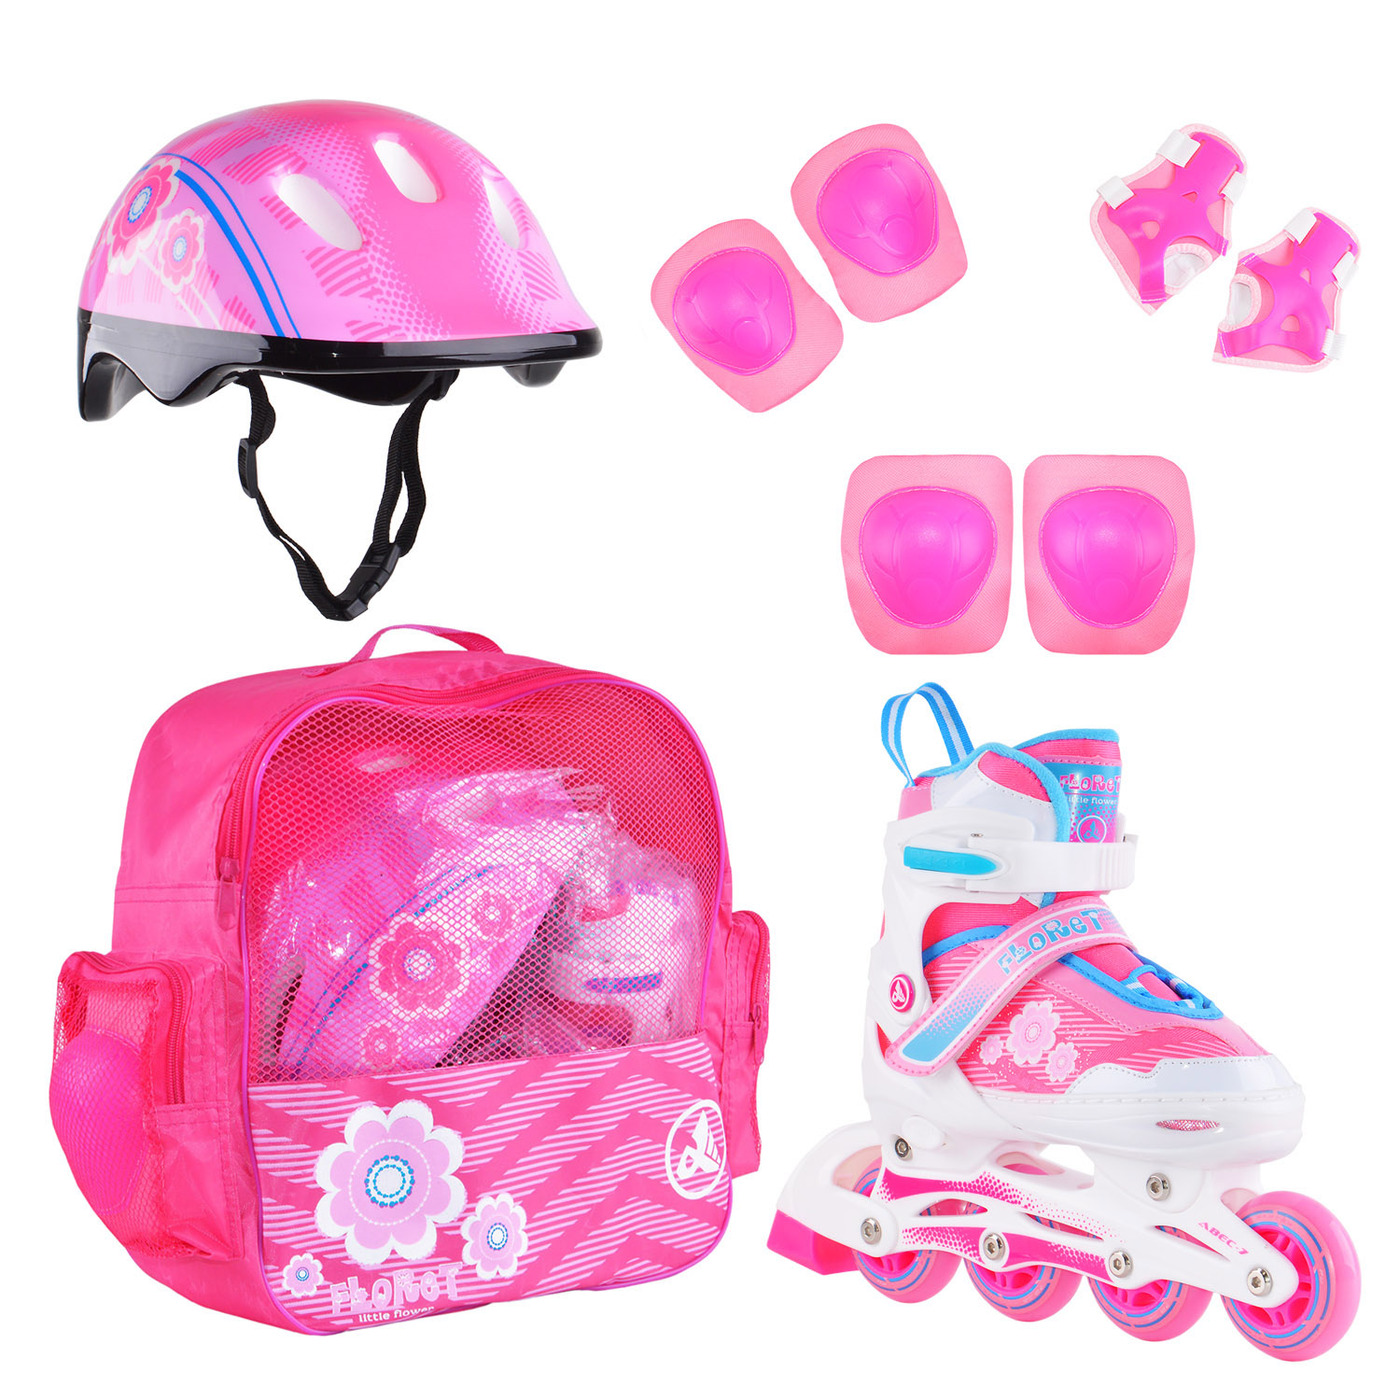 Раздвижные роликовые коньки Alpha Caprice FLORET Wh/Pink/Bl, шлем, защита, сумка M: 35-38 раздвижные коньки rgx cosmo pink